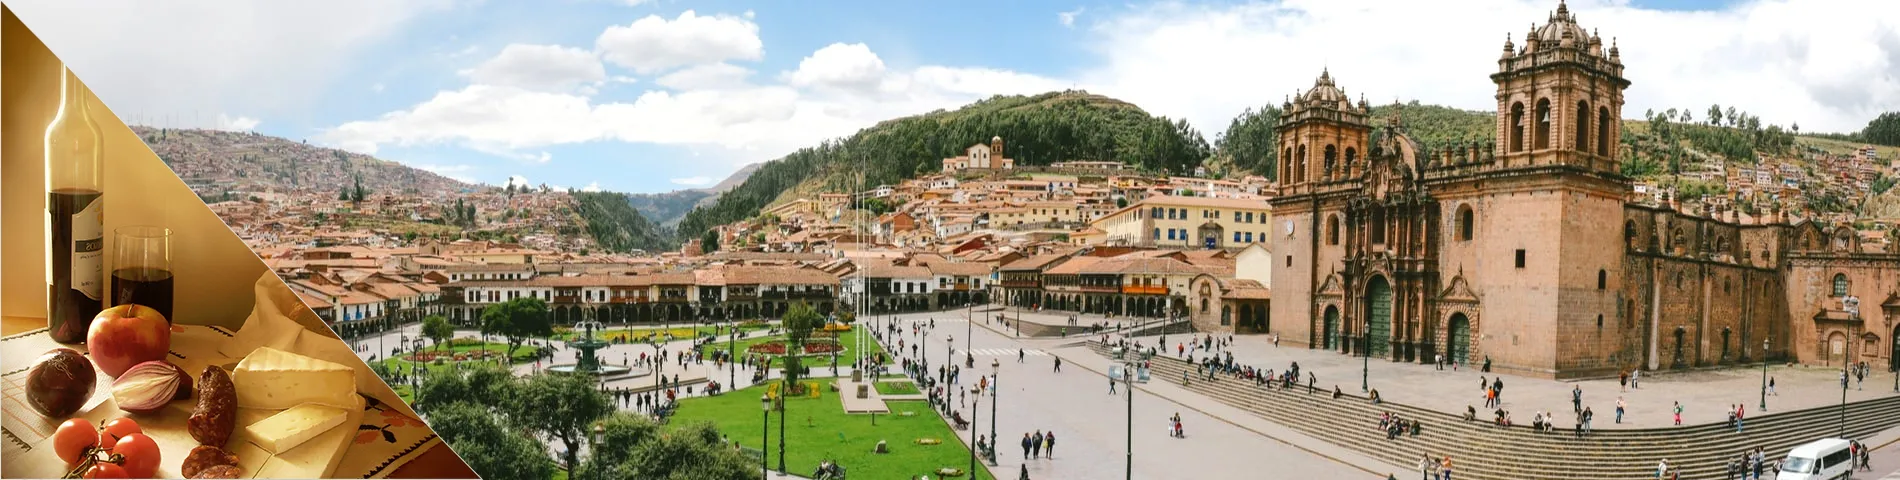 Cuzco - Espanja & kulttuuri